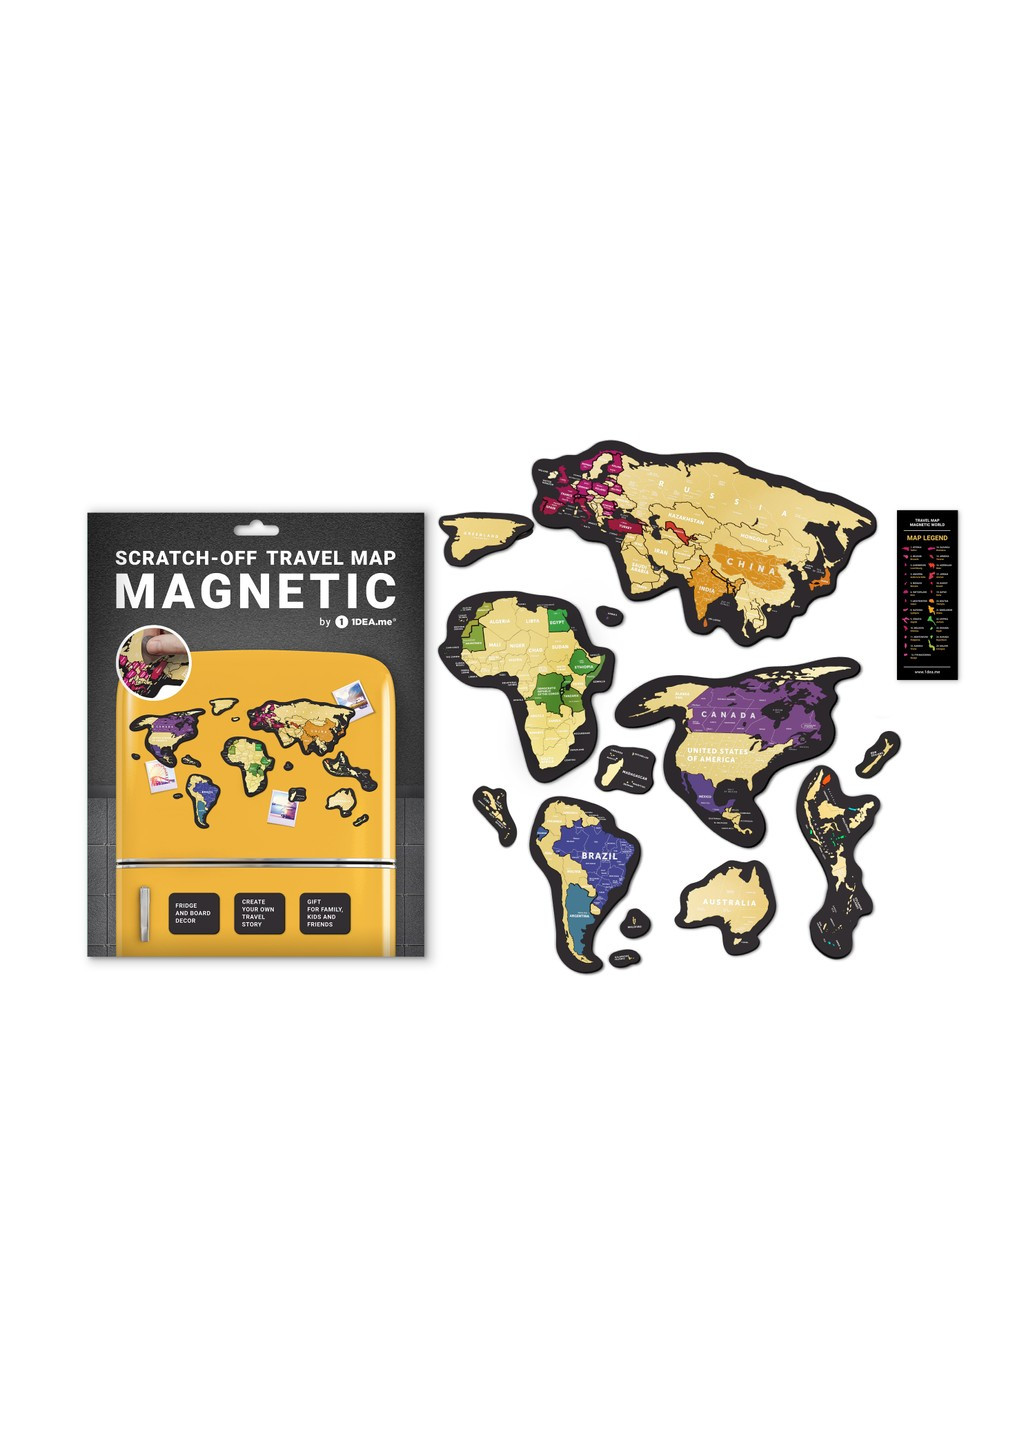 Скретч карта магнитная "Magnetic map" 1DEA.me (254293740)